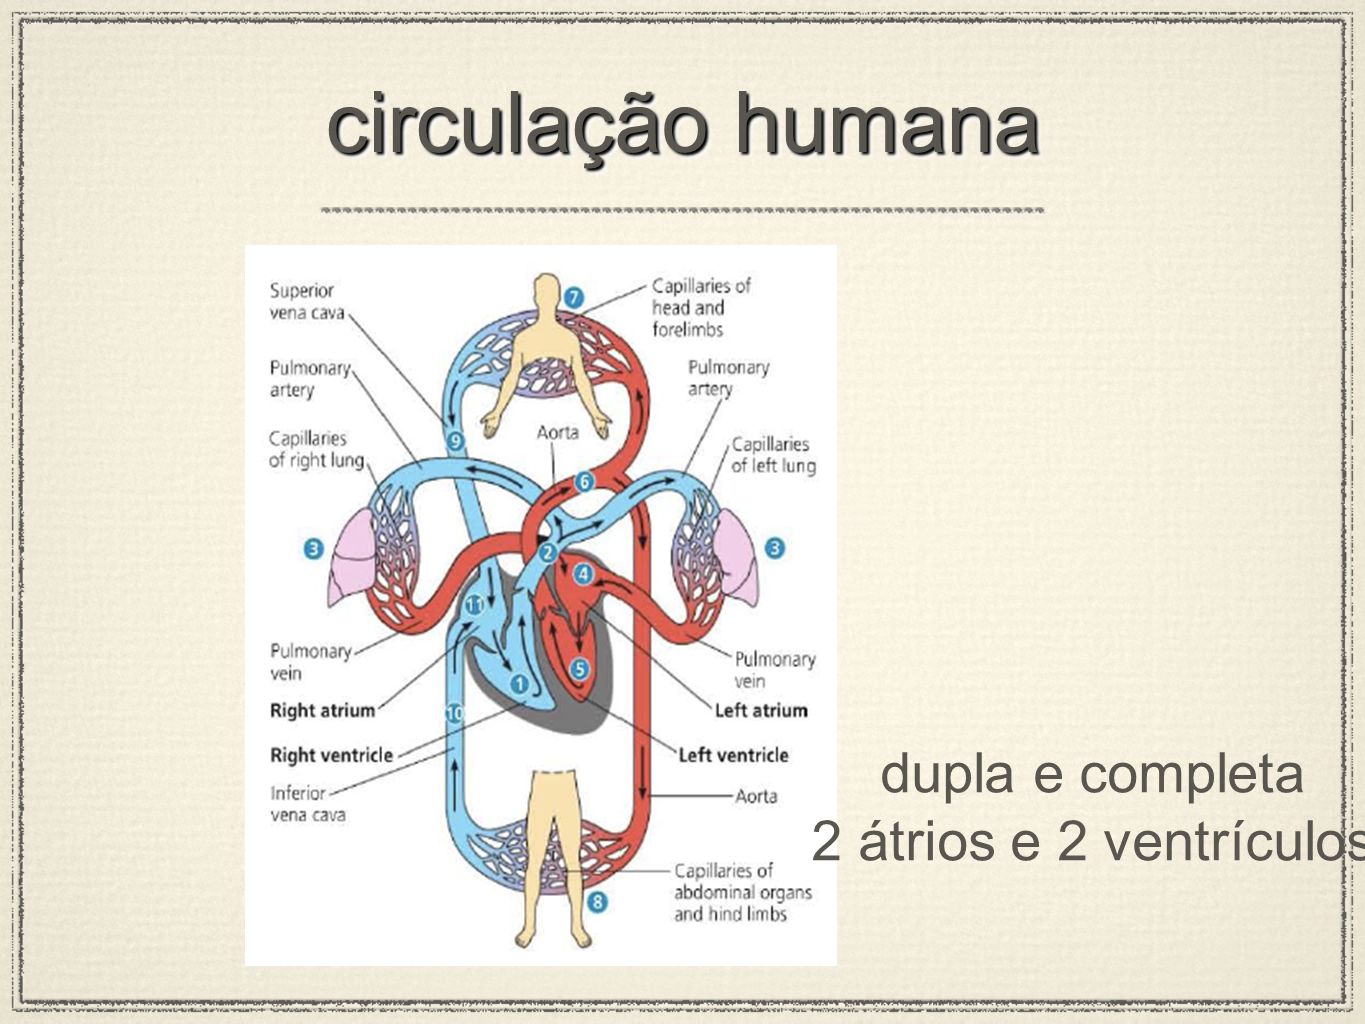 Fisiologia humana completa